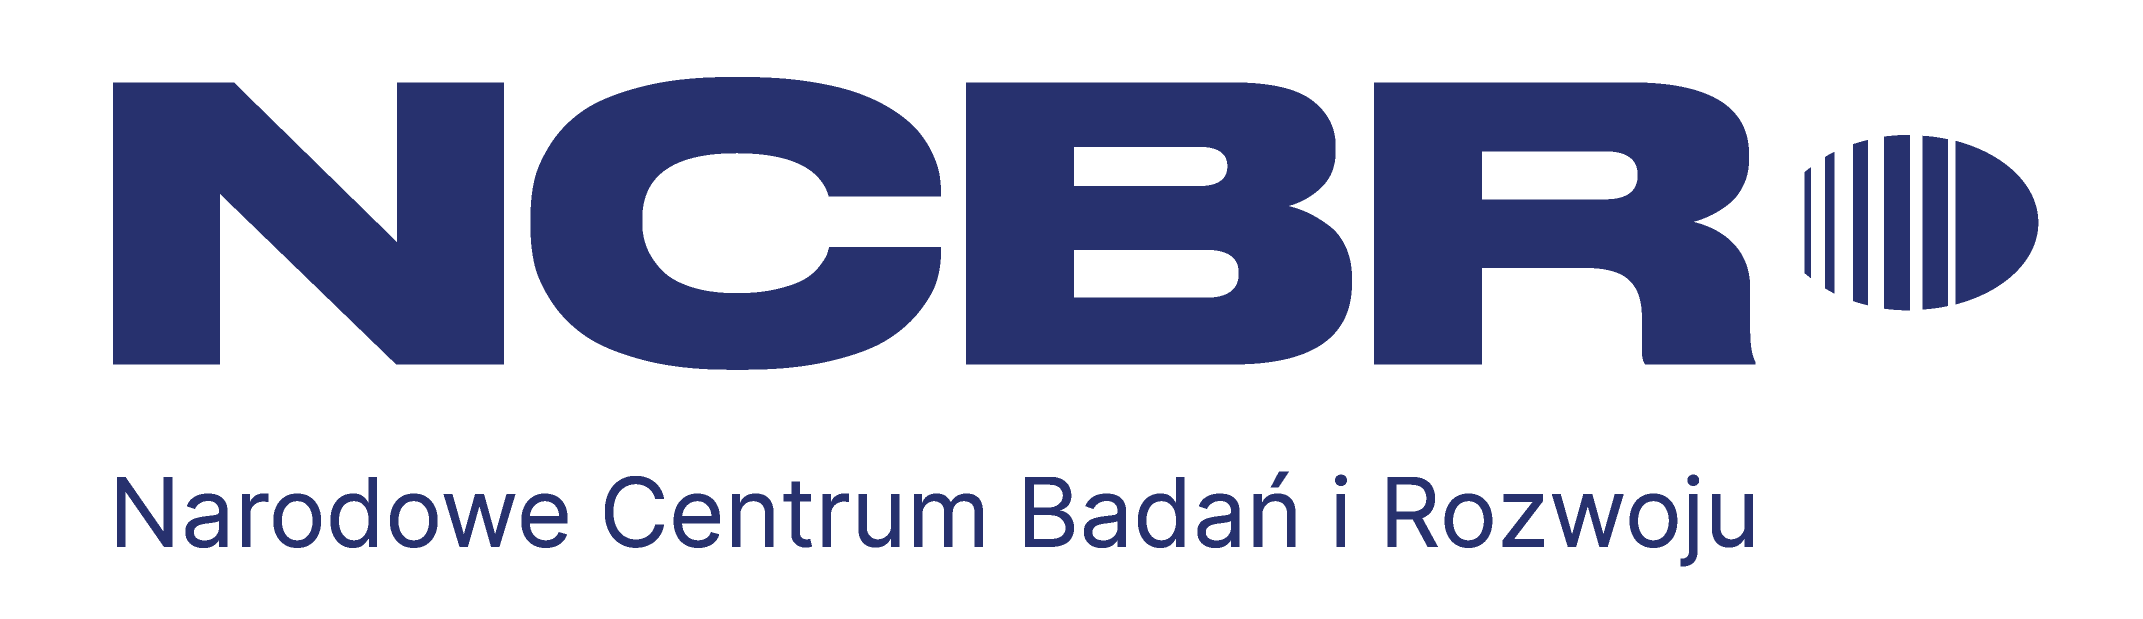 Logo Narodowego Centrum Badań i Rozwoju